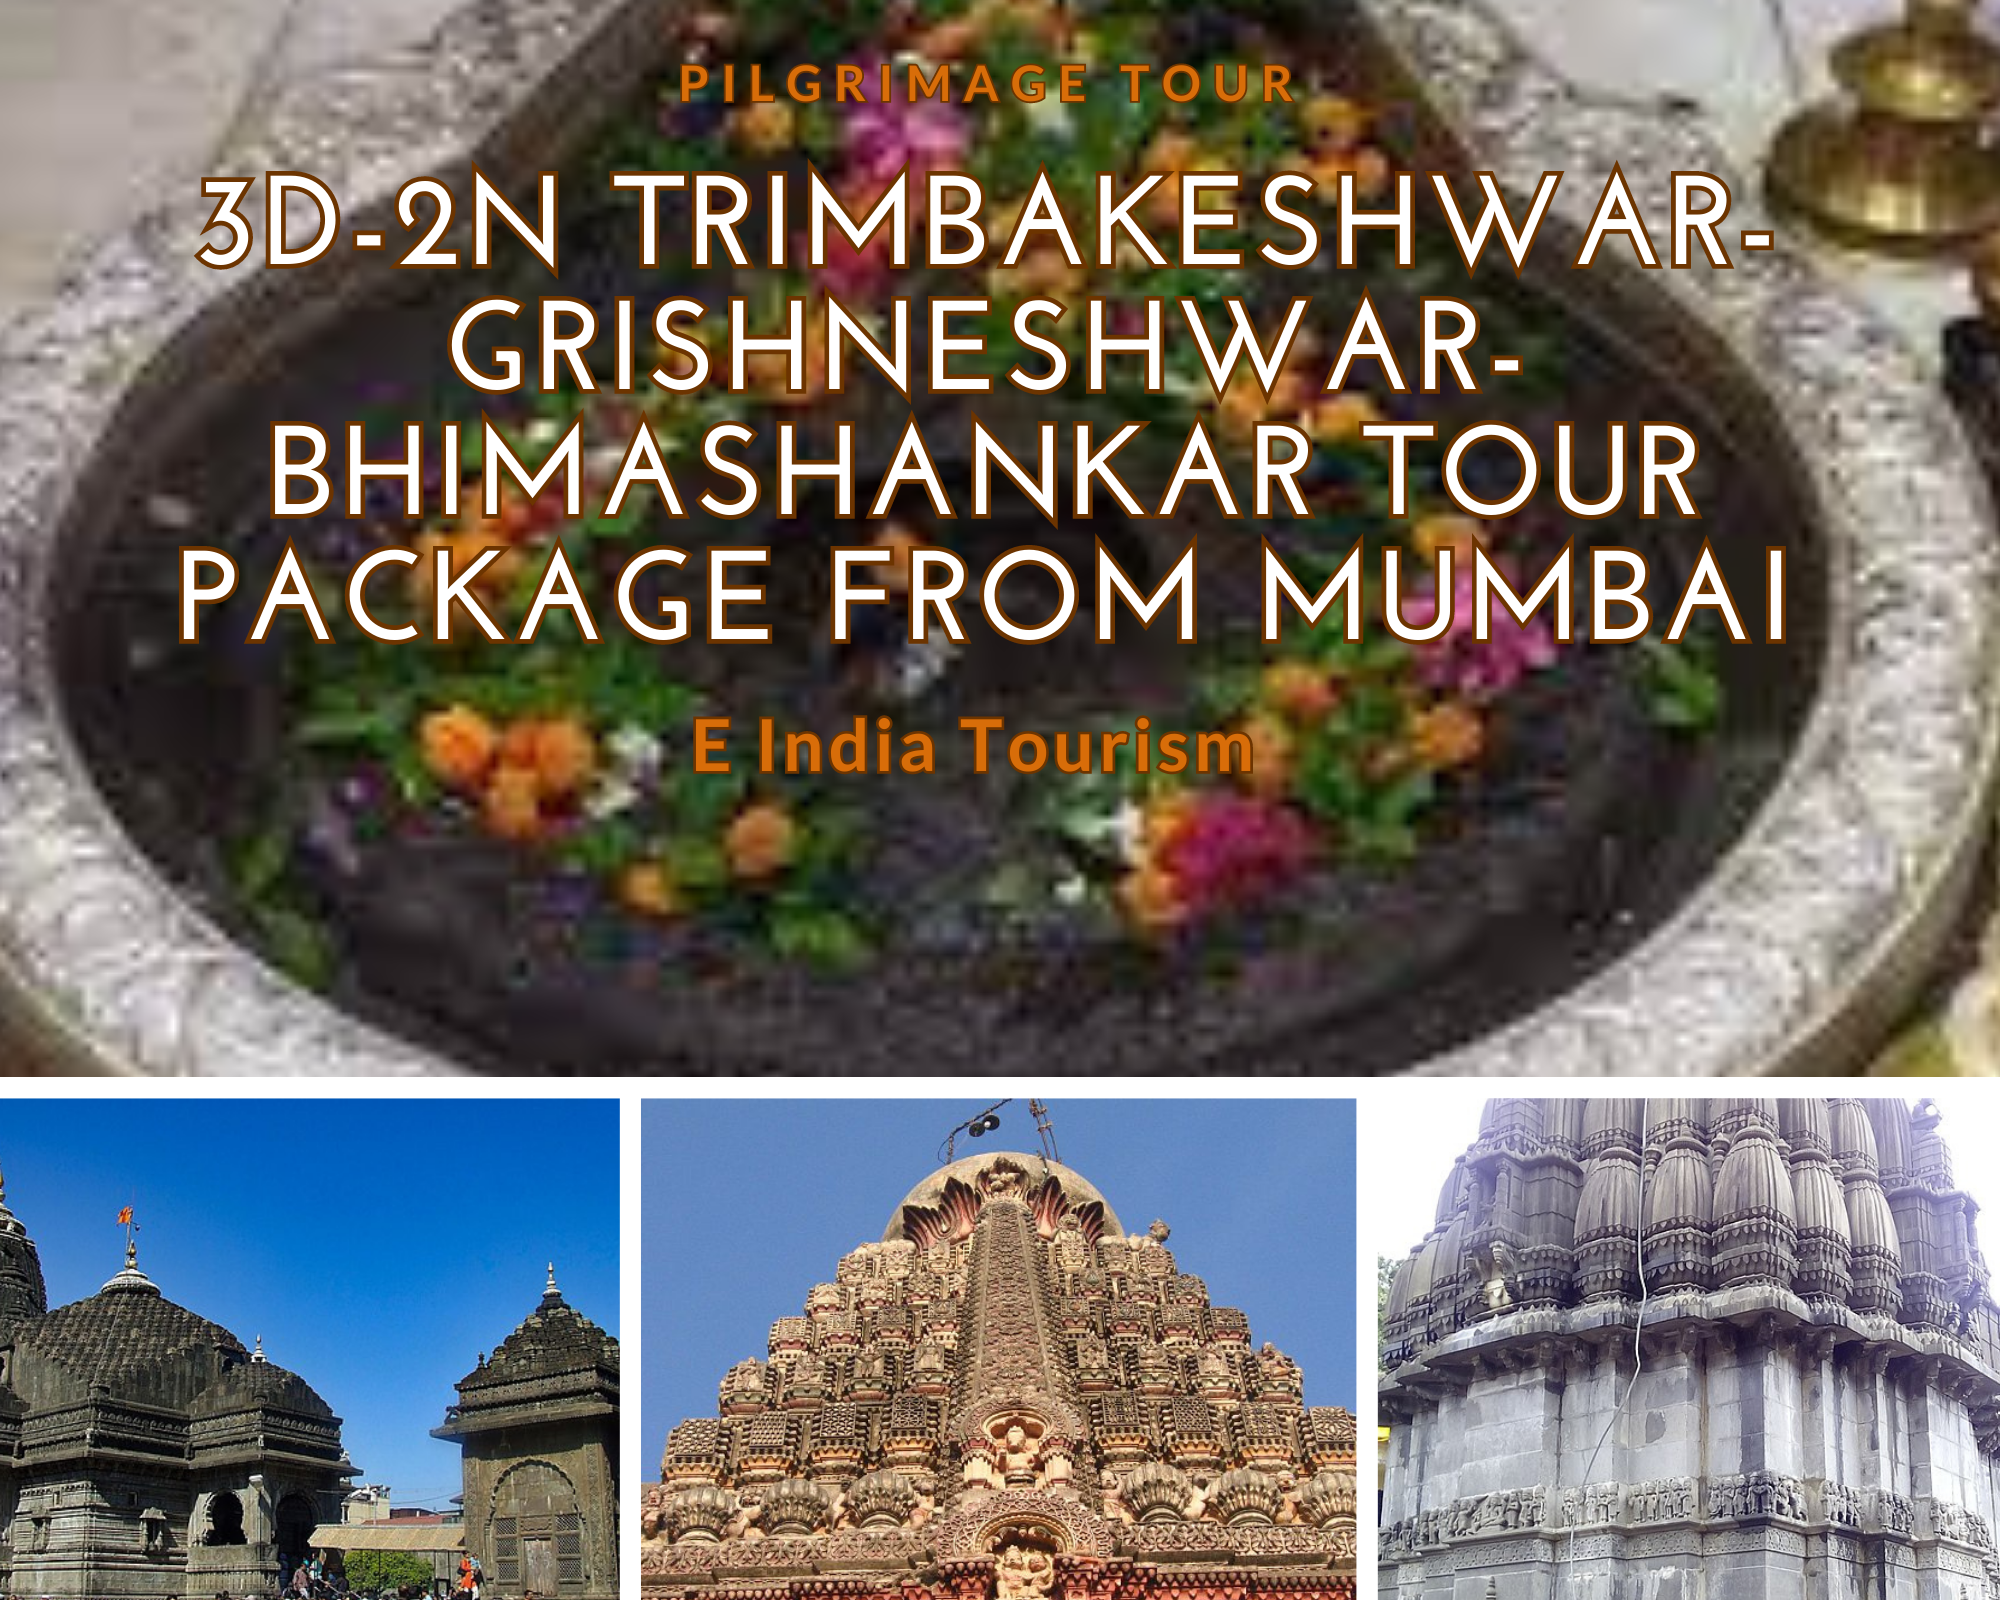 3D-2N Trimbakeshwar-Grishneshwar-Bhimashankar Tour Package From Mumbai